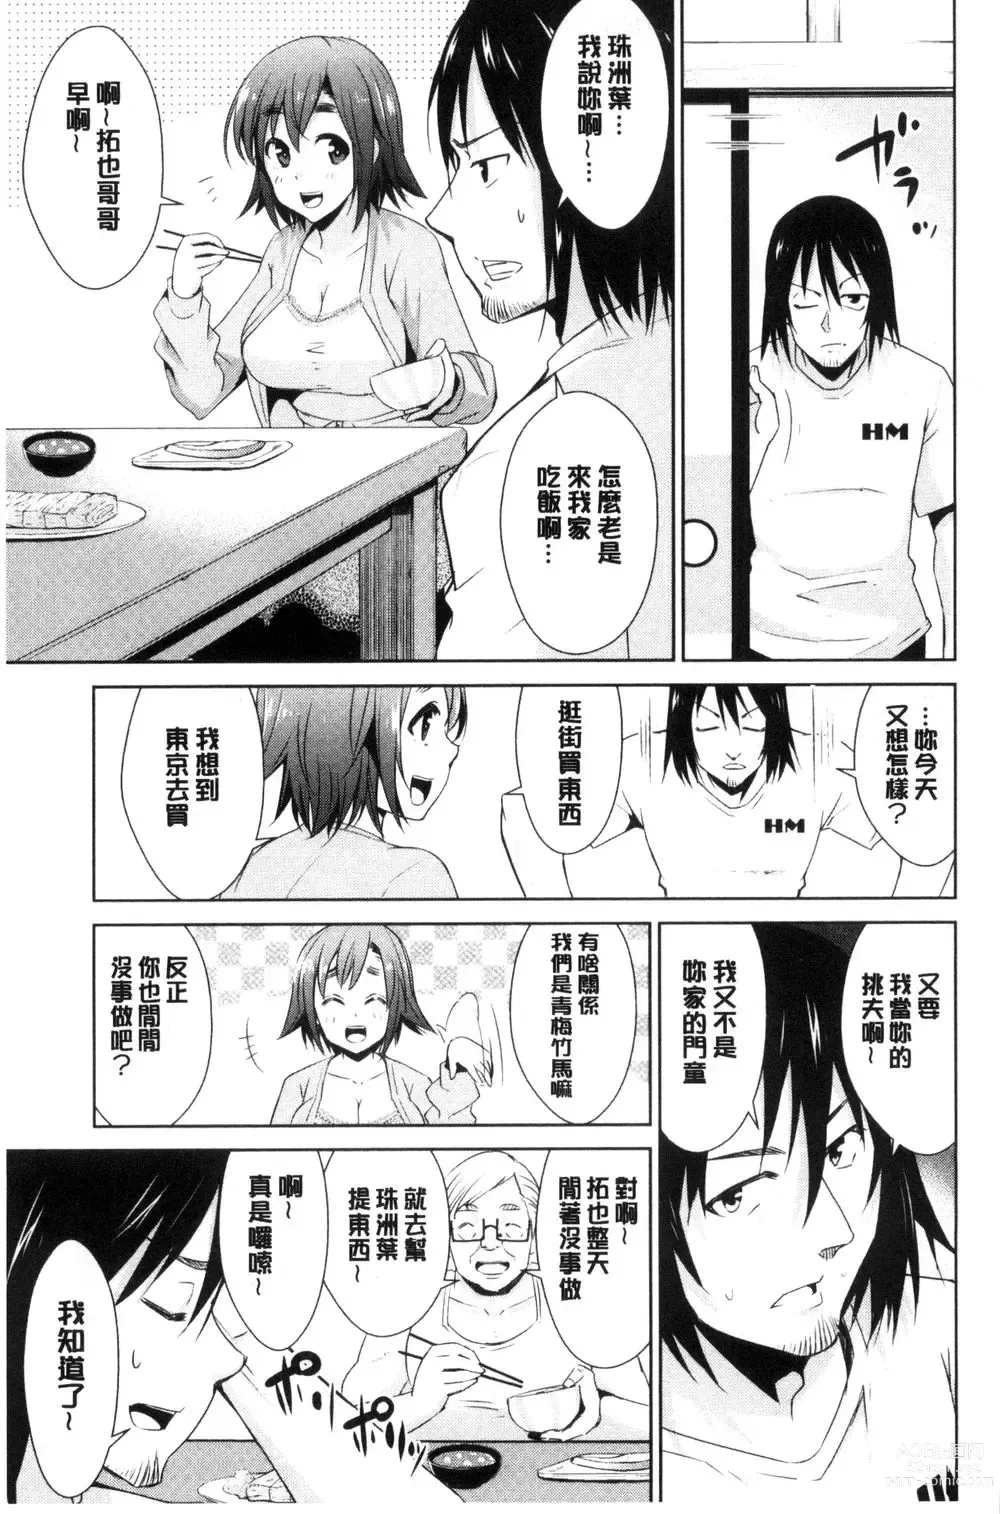 Page 9 of doujinshi ともだちっくす